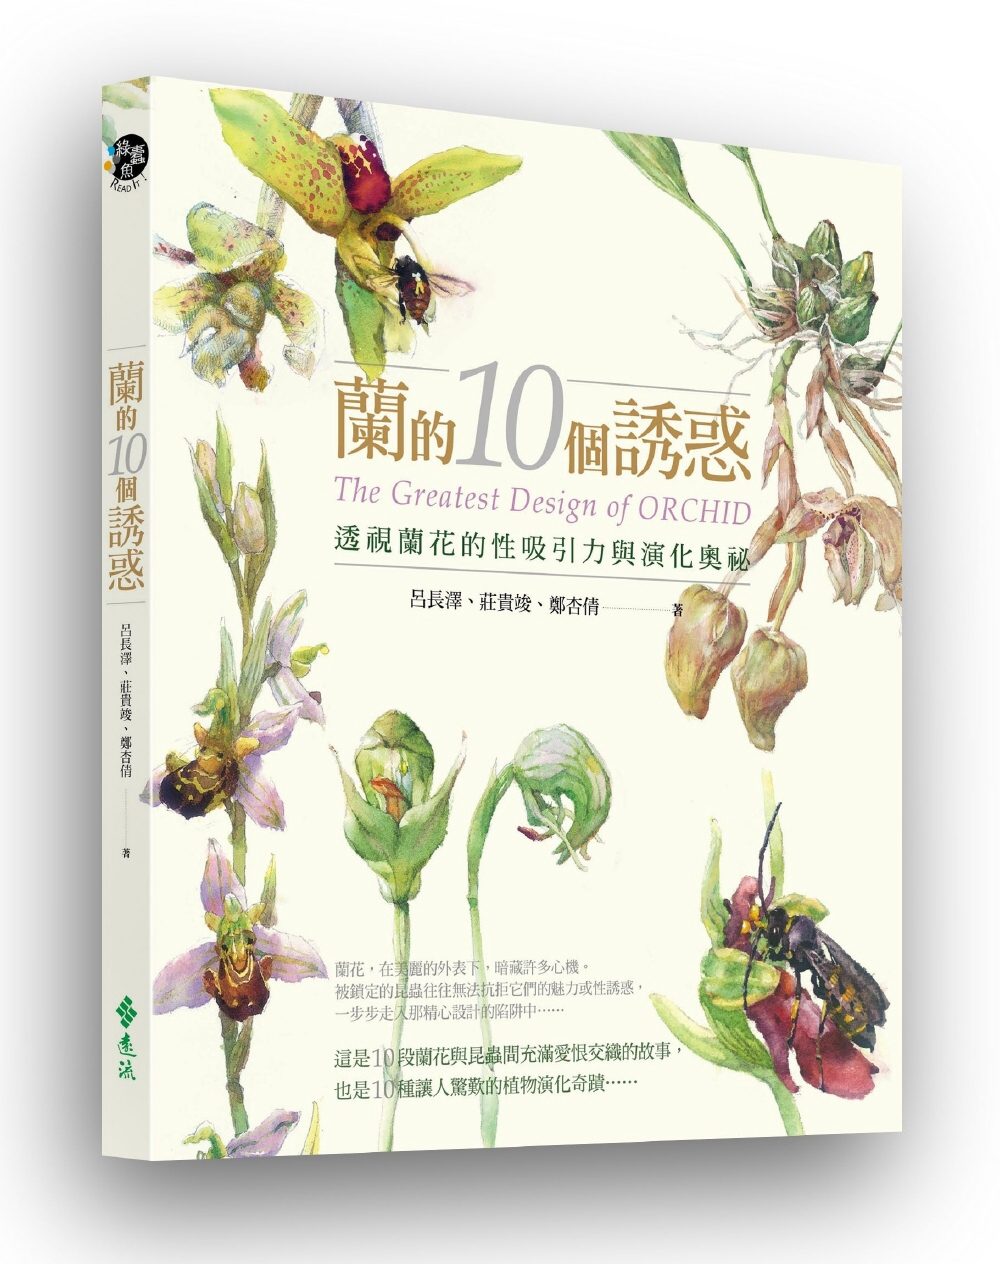 蘭的10個誘惑：透視蘭花的性吸引力與演化奧祕